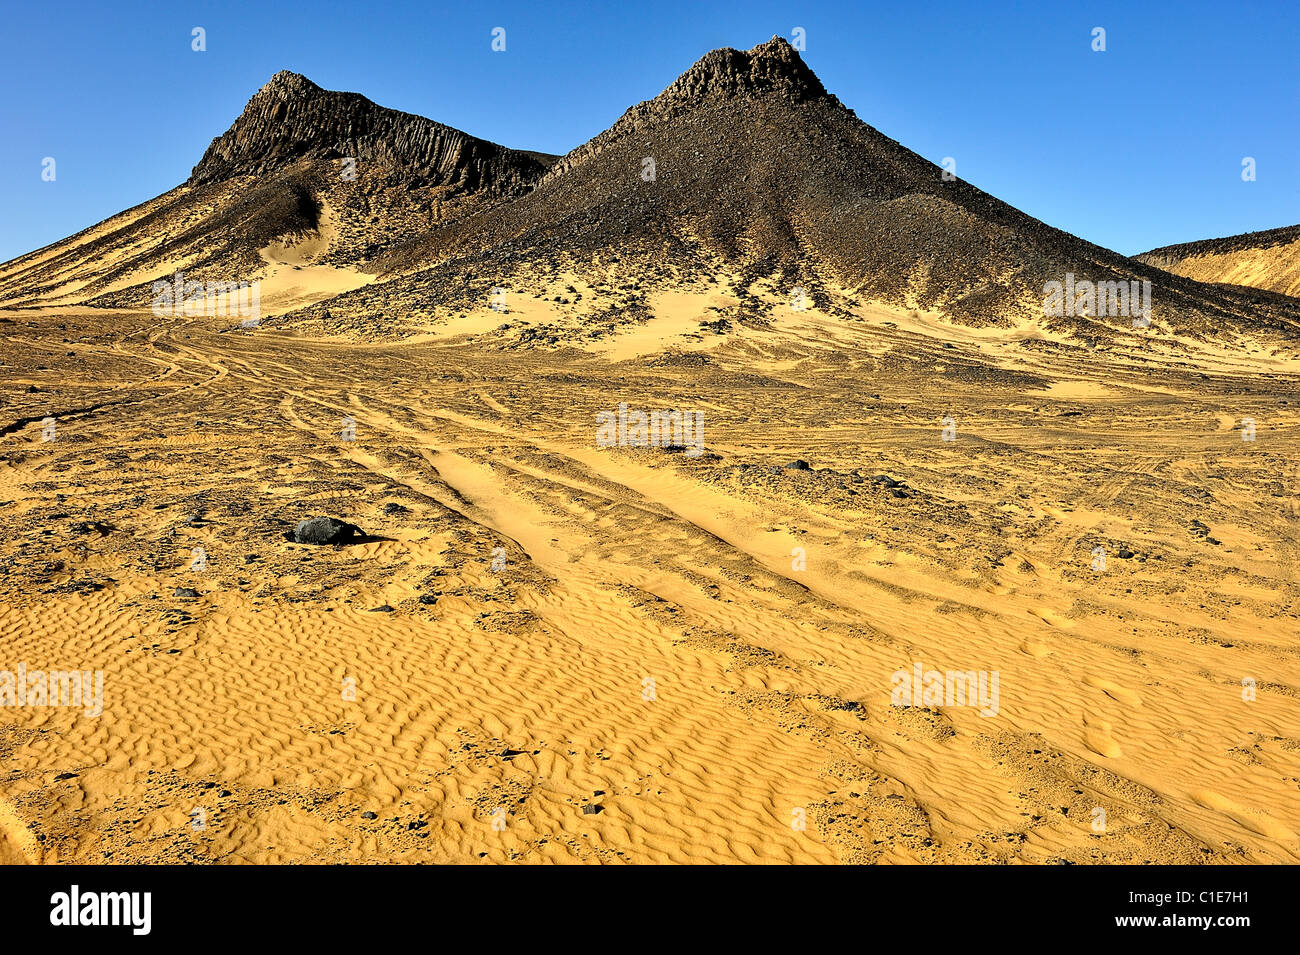 Berg vulkanischen Ursprungs in der westlichen Schwarzen Wüste, libysche Wüste, Ägypten Stockfoto